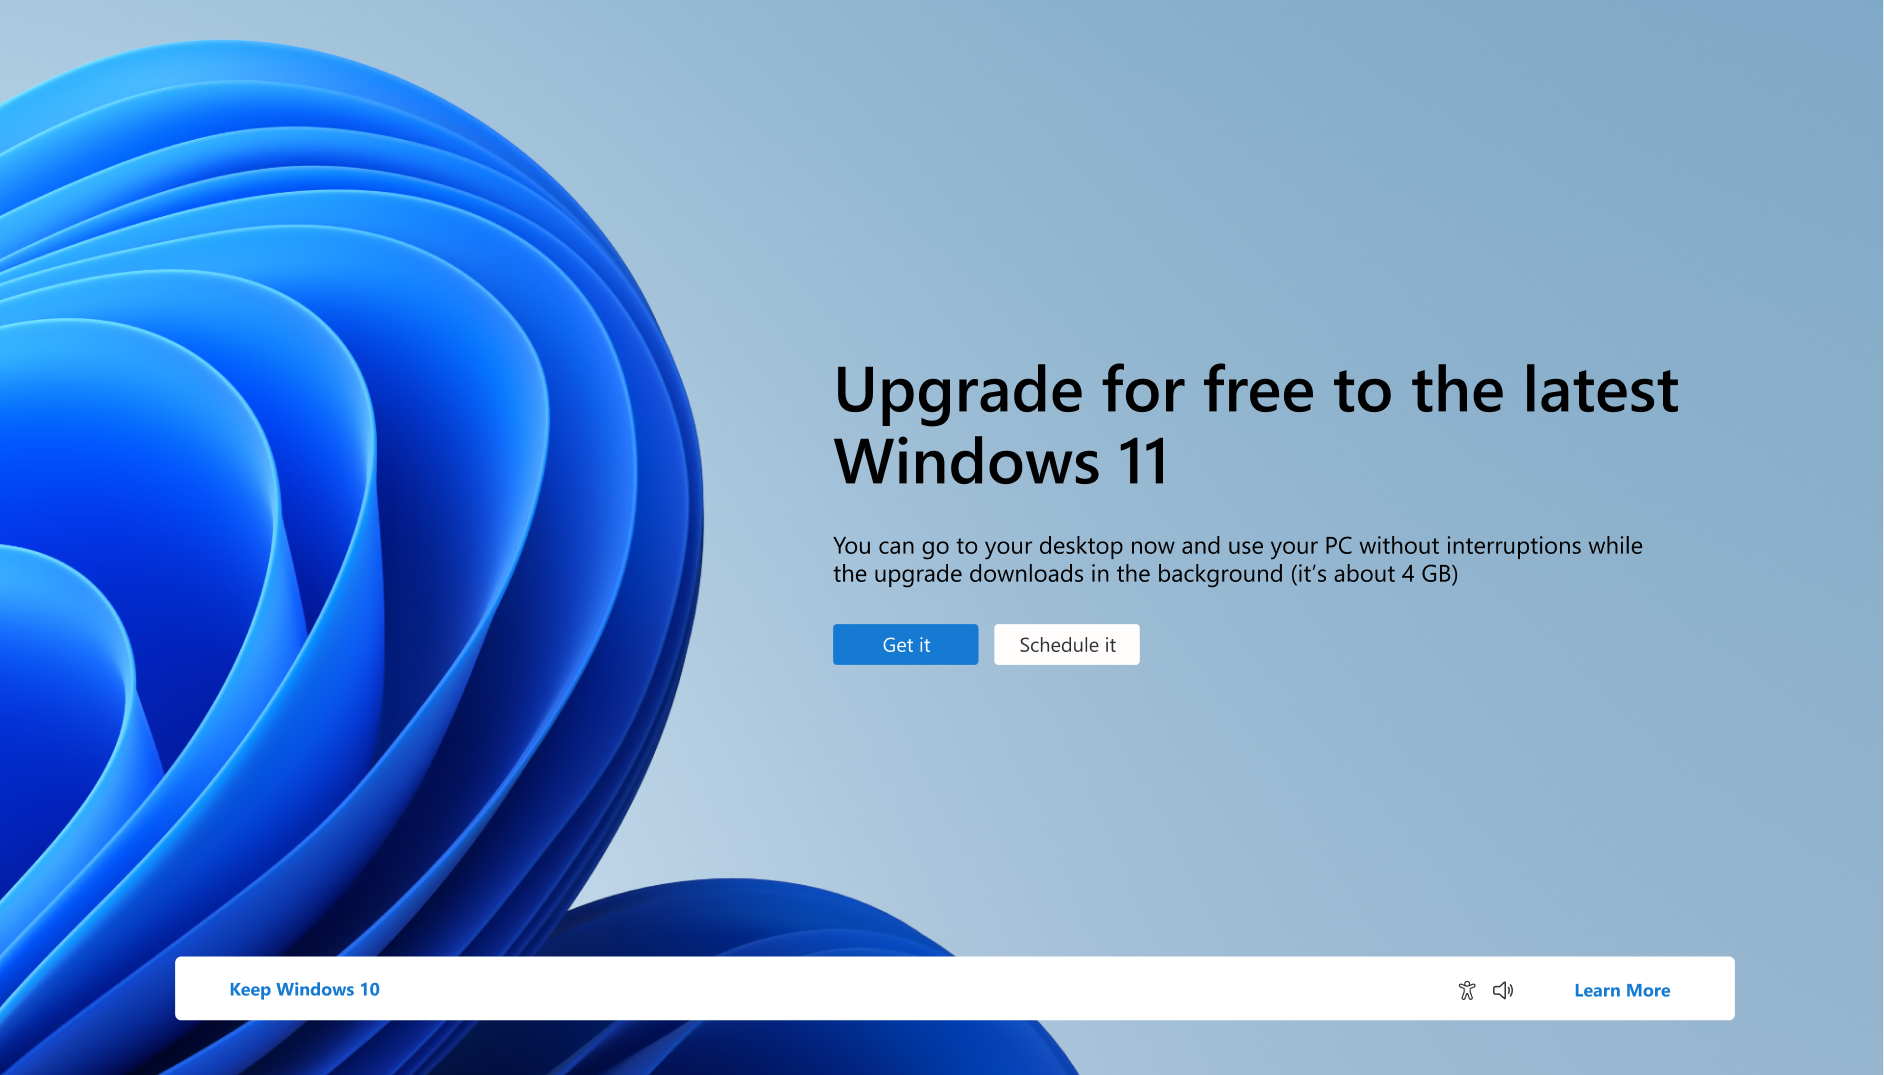 لقطة شاشة للإعلام الذي ينص على أنه يمكن للكمبيوتر الشخصي الترقية مجانا إلى Windows 11.